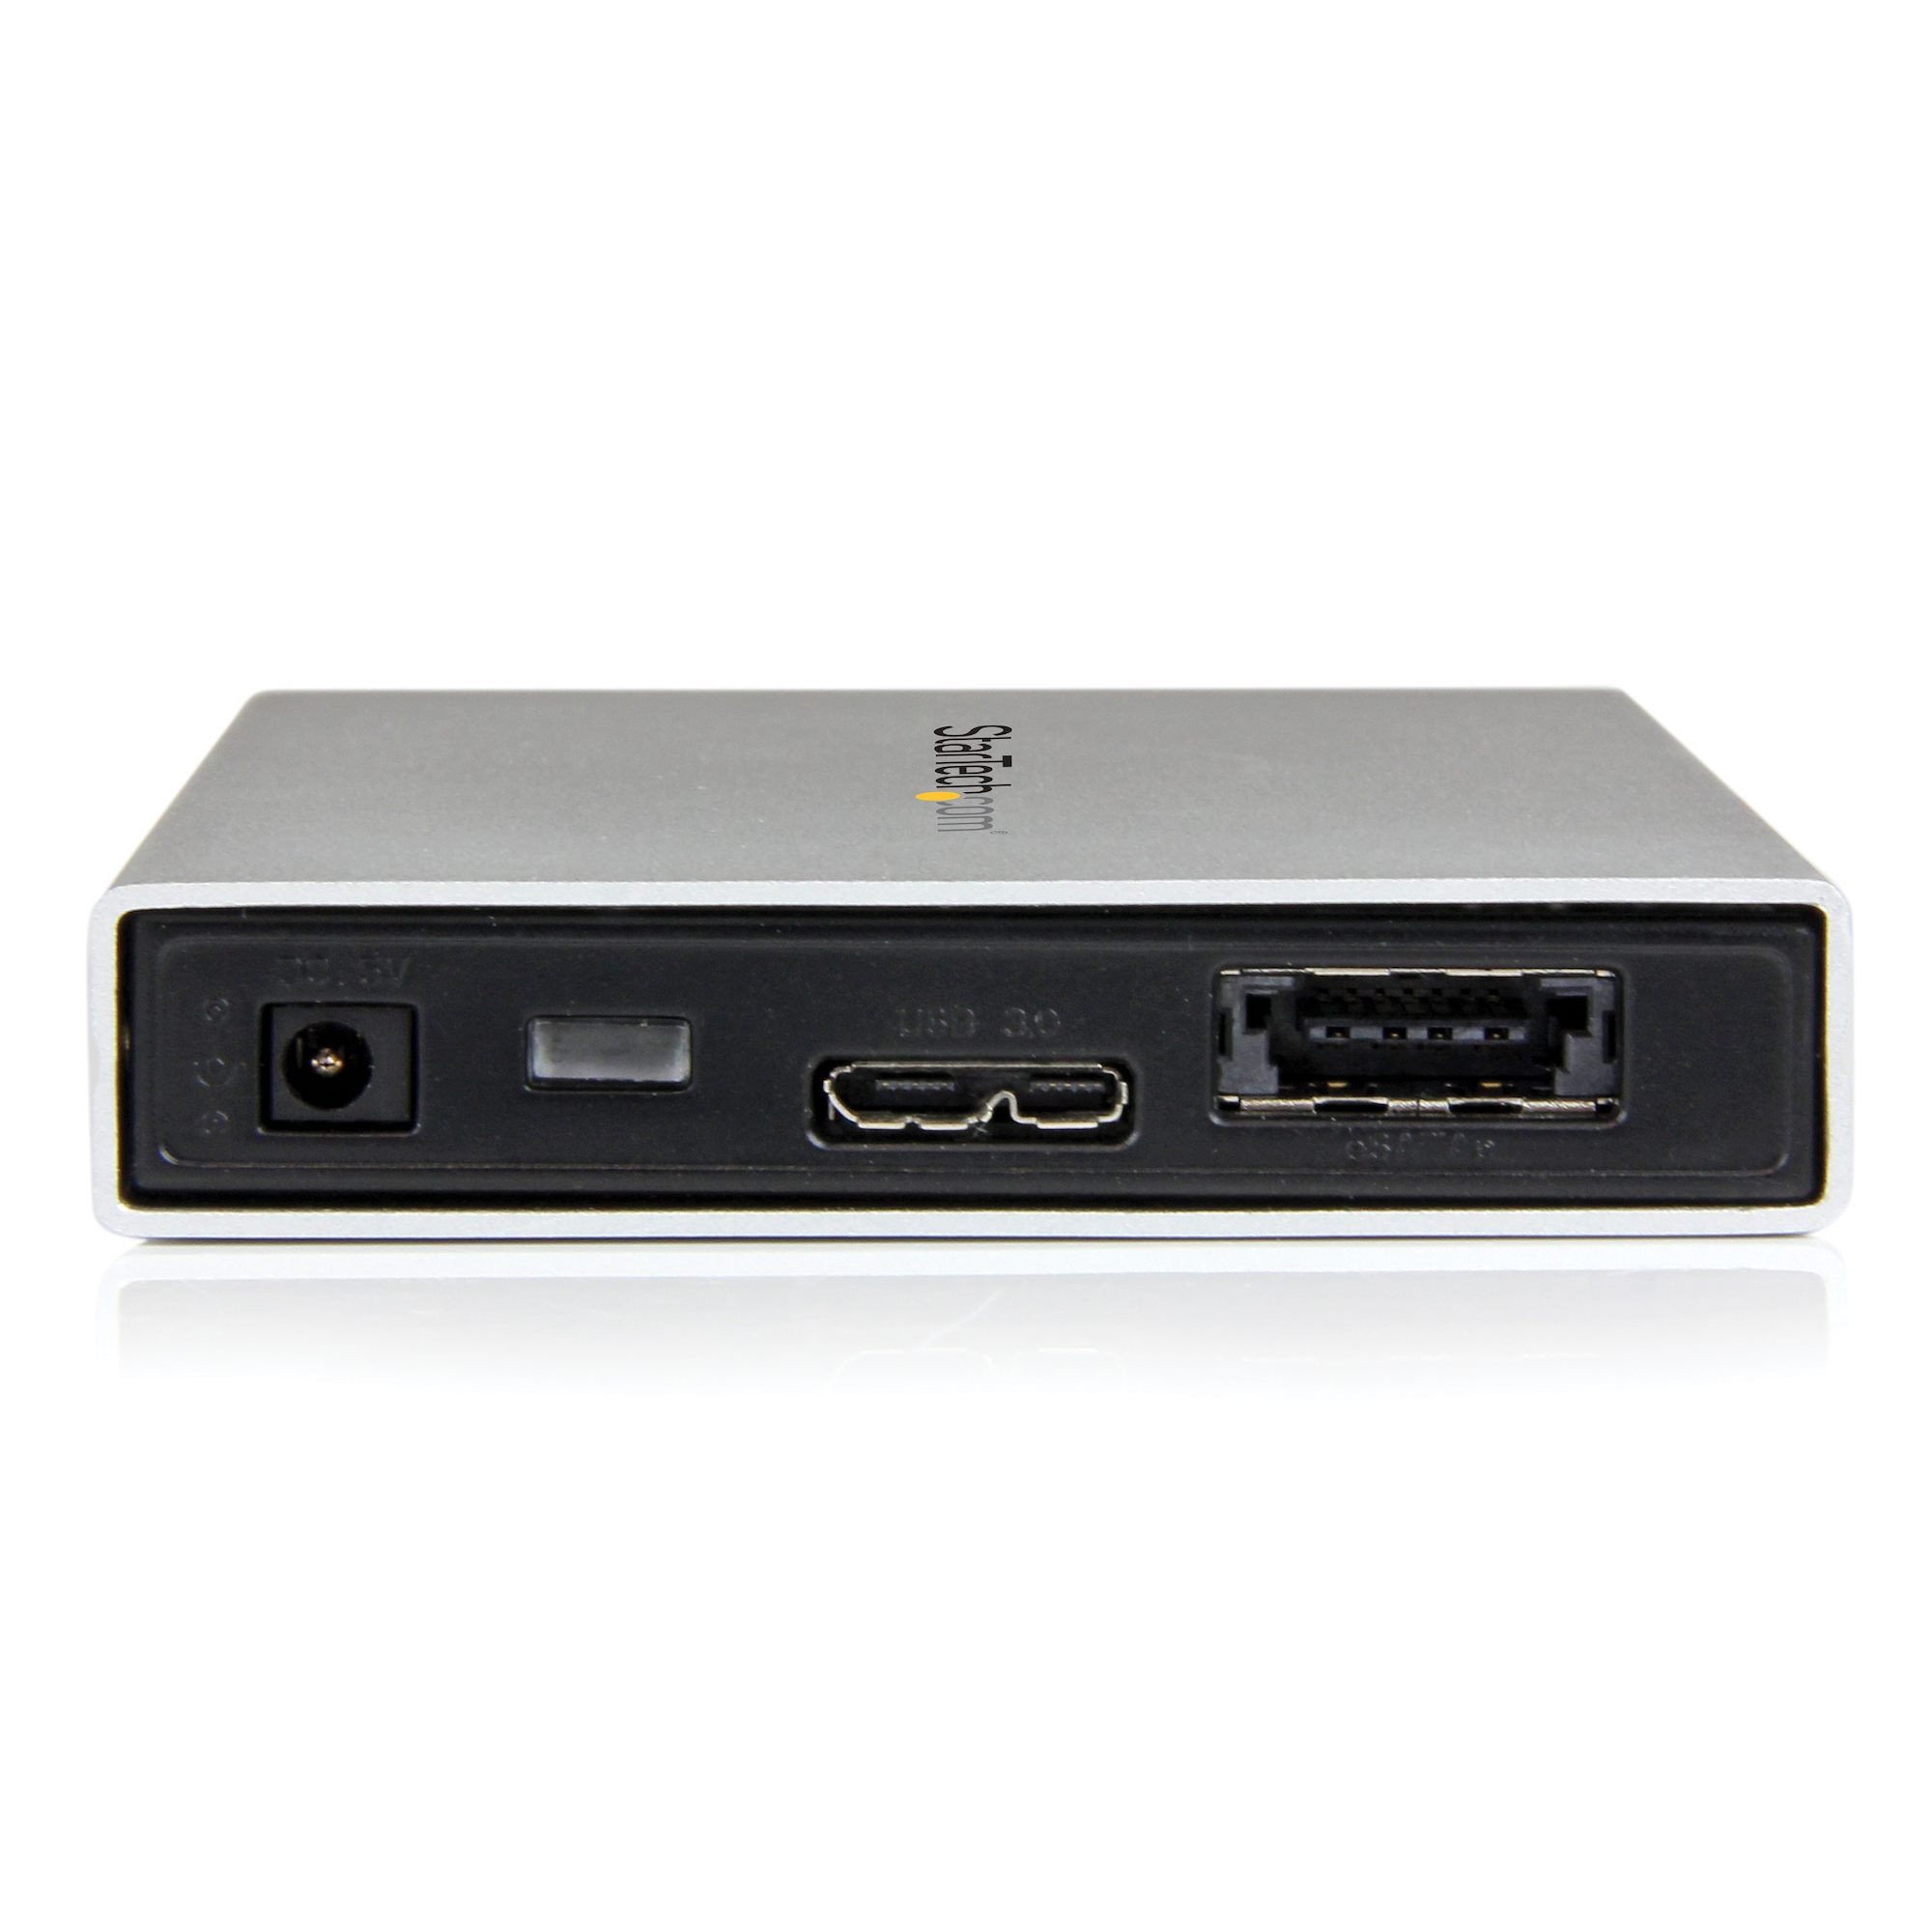 StarTech.com Boitier disque dur externe 3.0 SATA/SSD 2.5 avec UASP pour HDD  7mm - Boitier USB 3.0 SATA III 2,5 pouces - Noir (S2510BPU337)